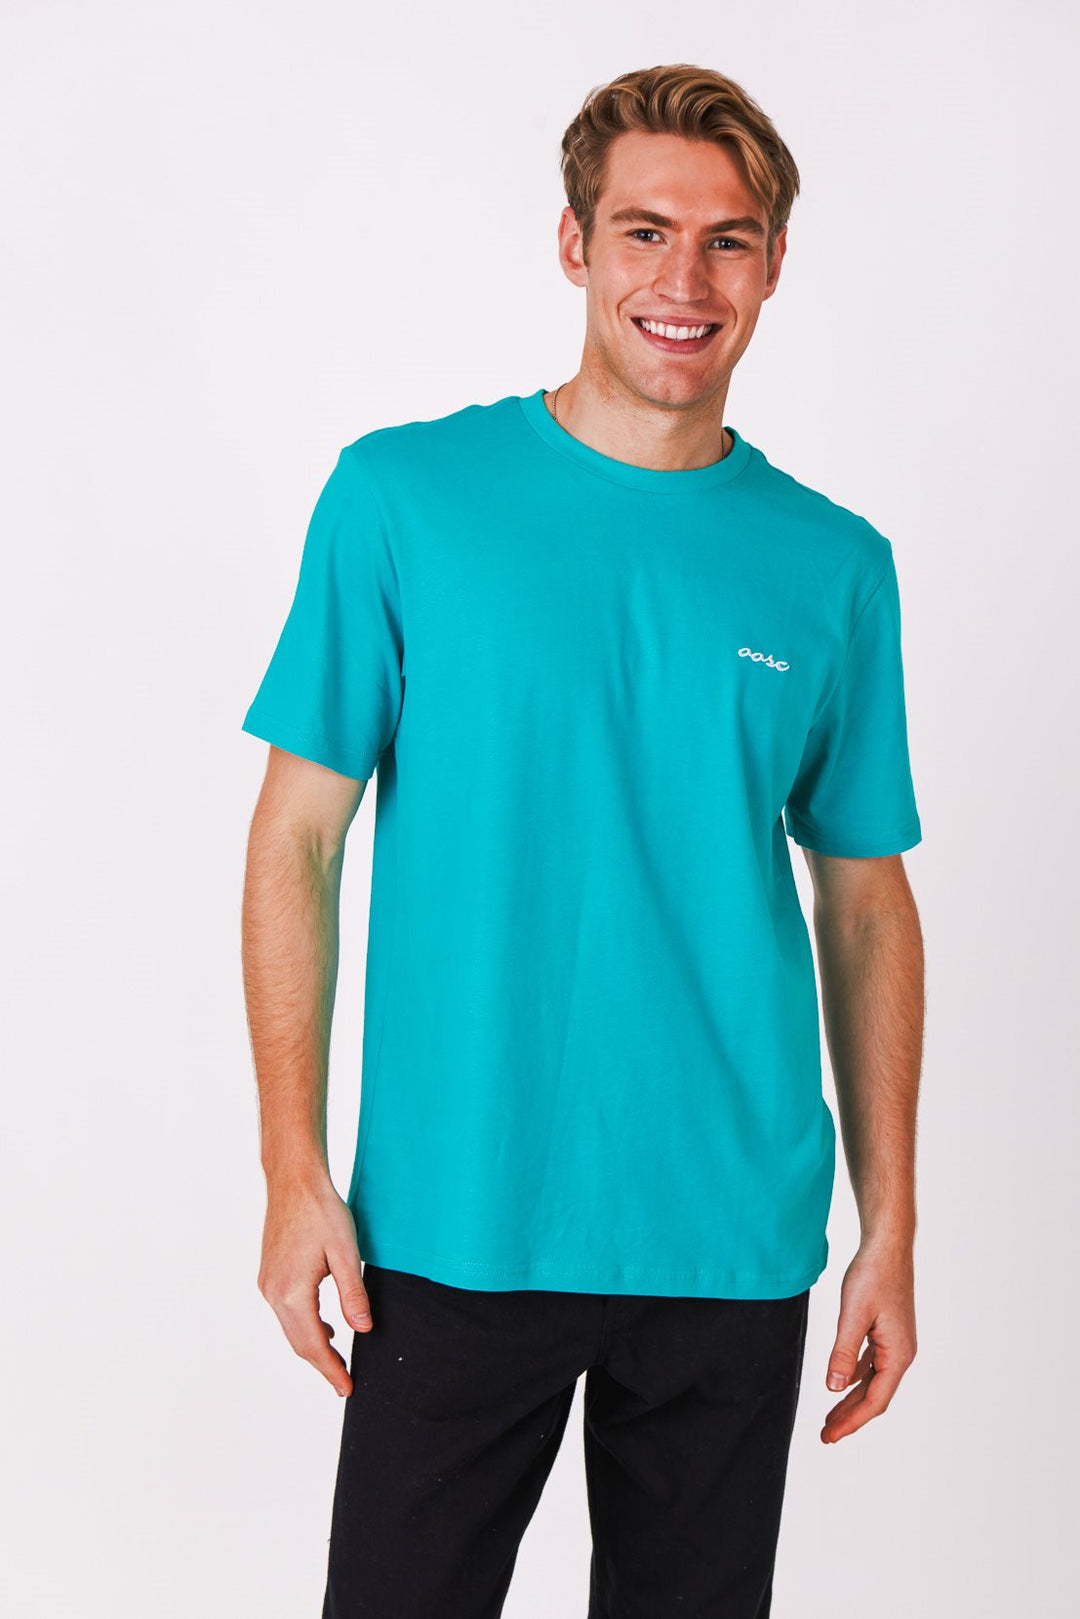 Penfold T-Shirt